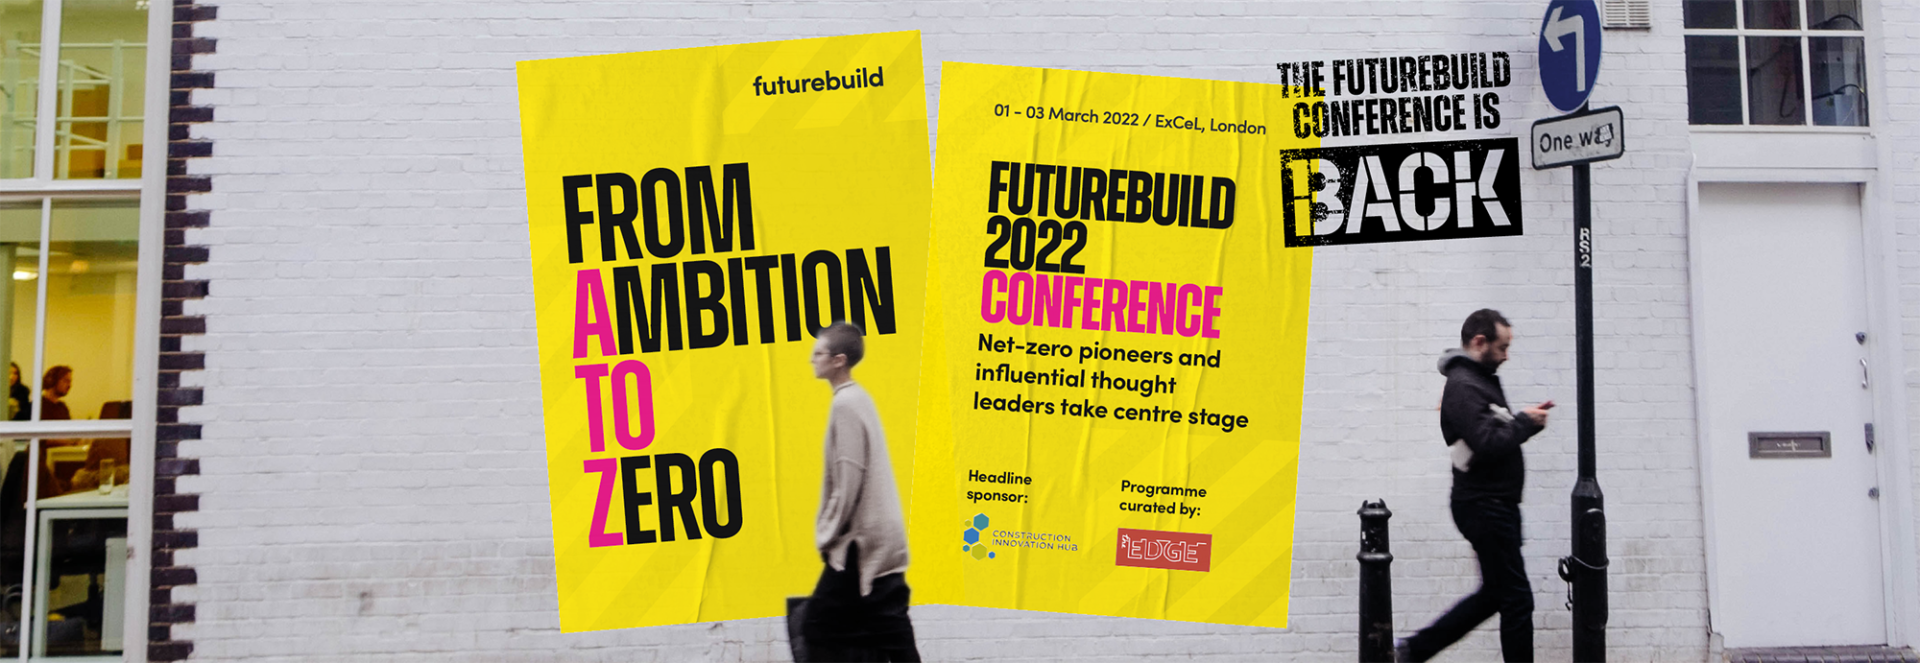 Futurebuild Conference